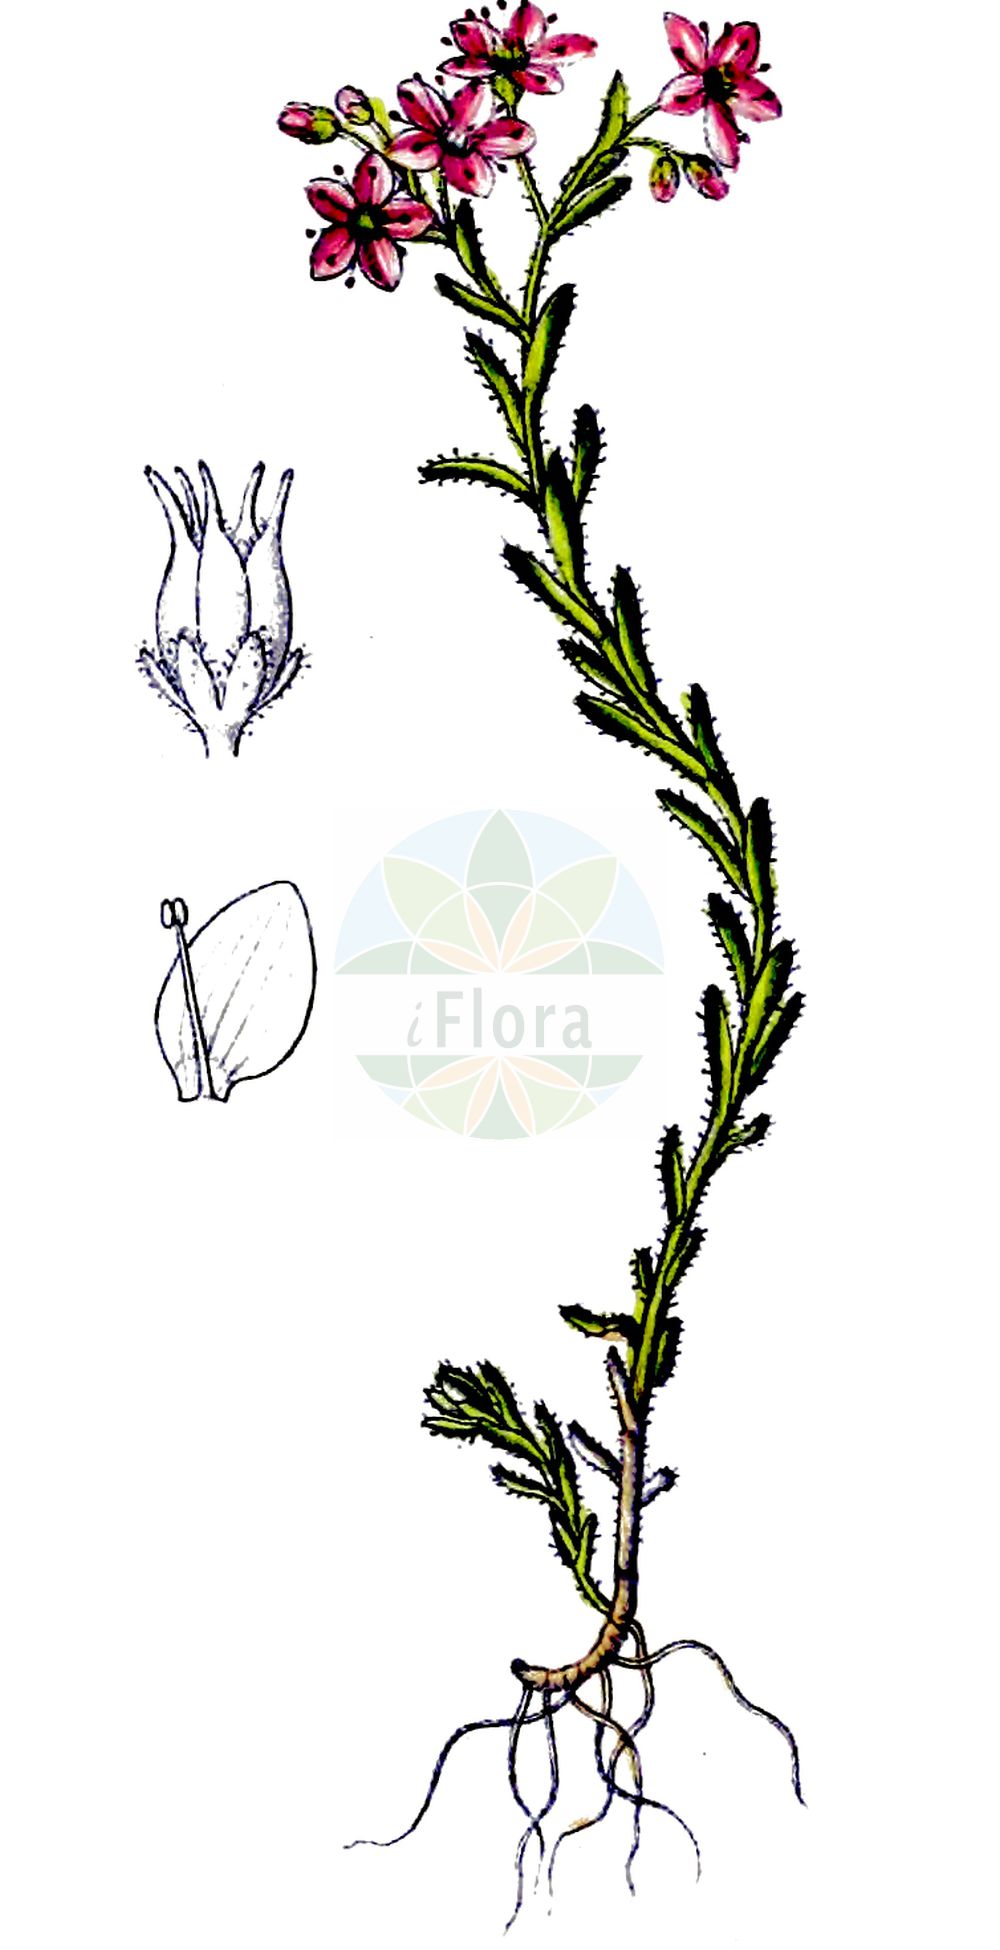 Historische Abbildung von Sedum villosum (Sumpf-Fetthenne - Hairy Stonecrop). Das Bild zeigt Blatt, Bluete, Frucht und Same. ---- Historical Drawing of Sedum villosum (Sumpf-Fetthenne - Hairy Stonecrop). The image is showing leaf, flower, fruit and seed.(Sedum villosum,Sumpf-Fetthenne,Hairy Stonecrop,Oreosedum villosum,Sedum pentandrum,Sedum villosum,Sedum villosum L. var.,Sumpf-Fetthenne,Druesen-Mauerpfeffer,Moor-Mauerpfeffer,Hairy Stonecrop,Purple Stonecrop,Sedum,Fetthenne,Stonecrop,Crassulaceae,Dickblattgewächse,Stonecrop family,Blatt,Bluete,Frucht,Same,leaf,flower,fruit,seed,Dietrich (1833-1844))